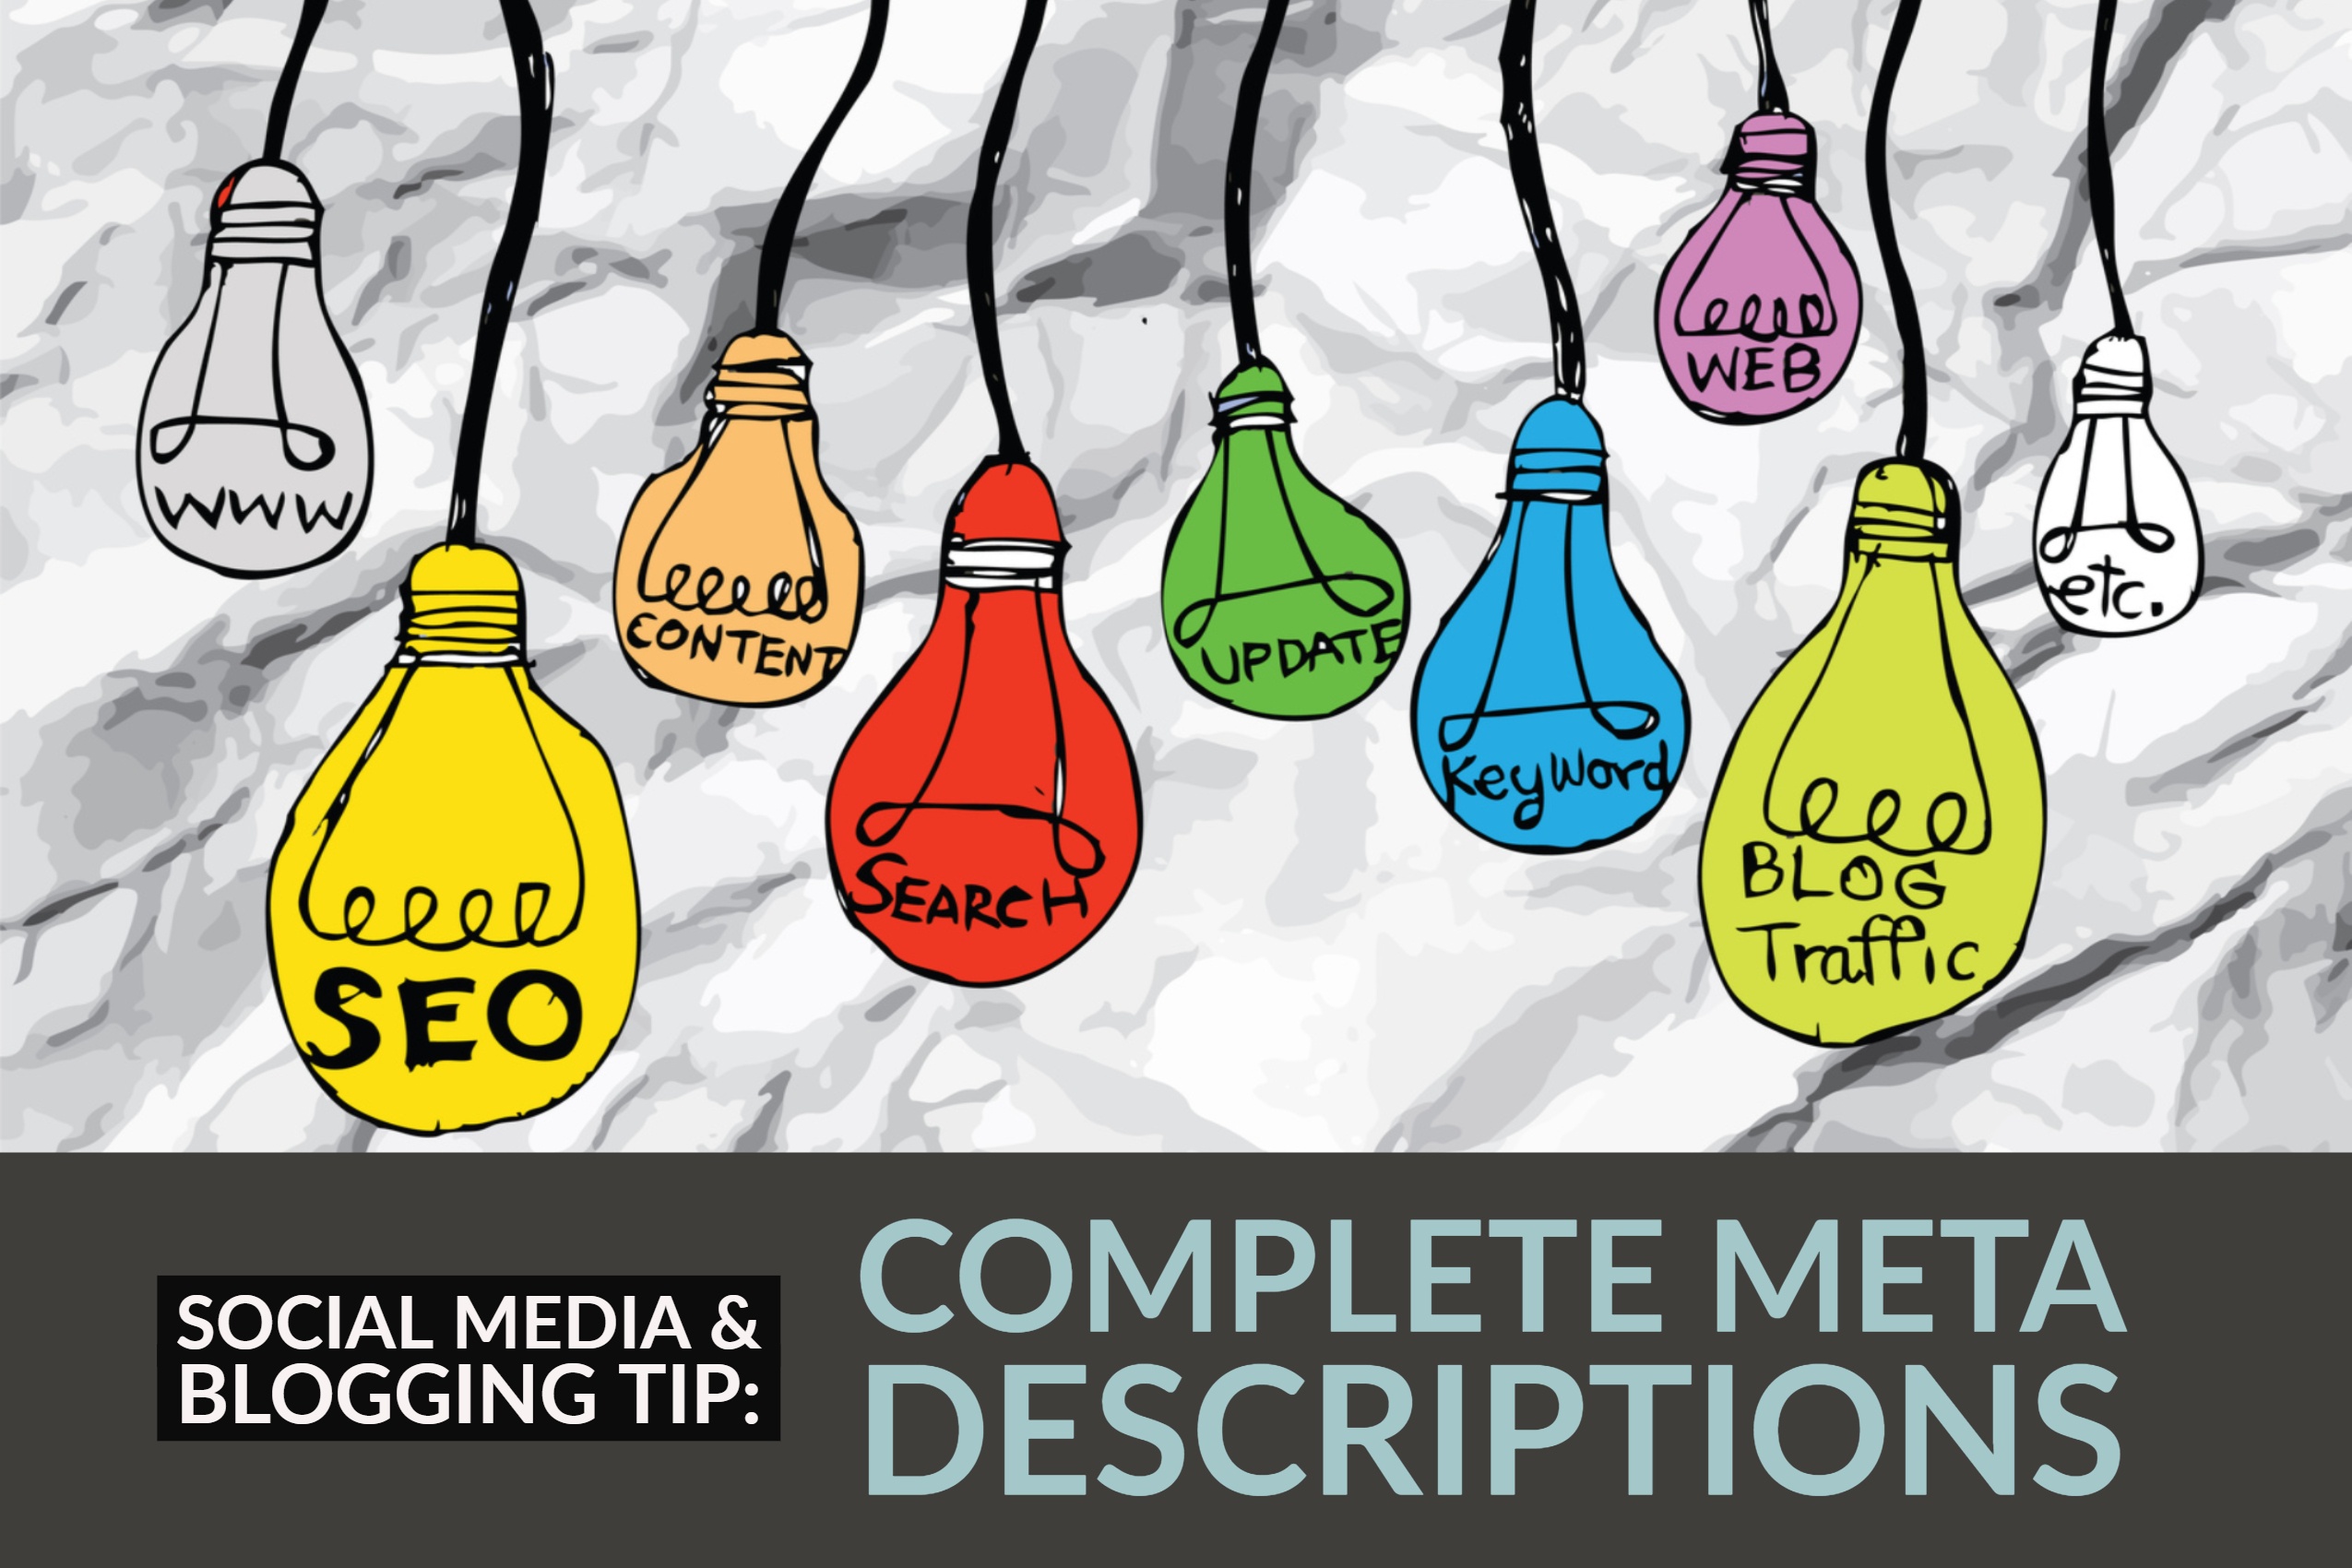 Social Media & Blogging Tip: Complete Meta Descriptions